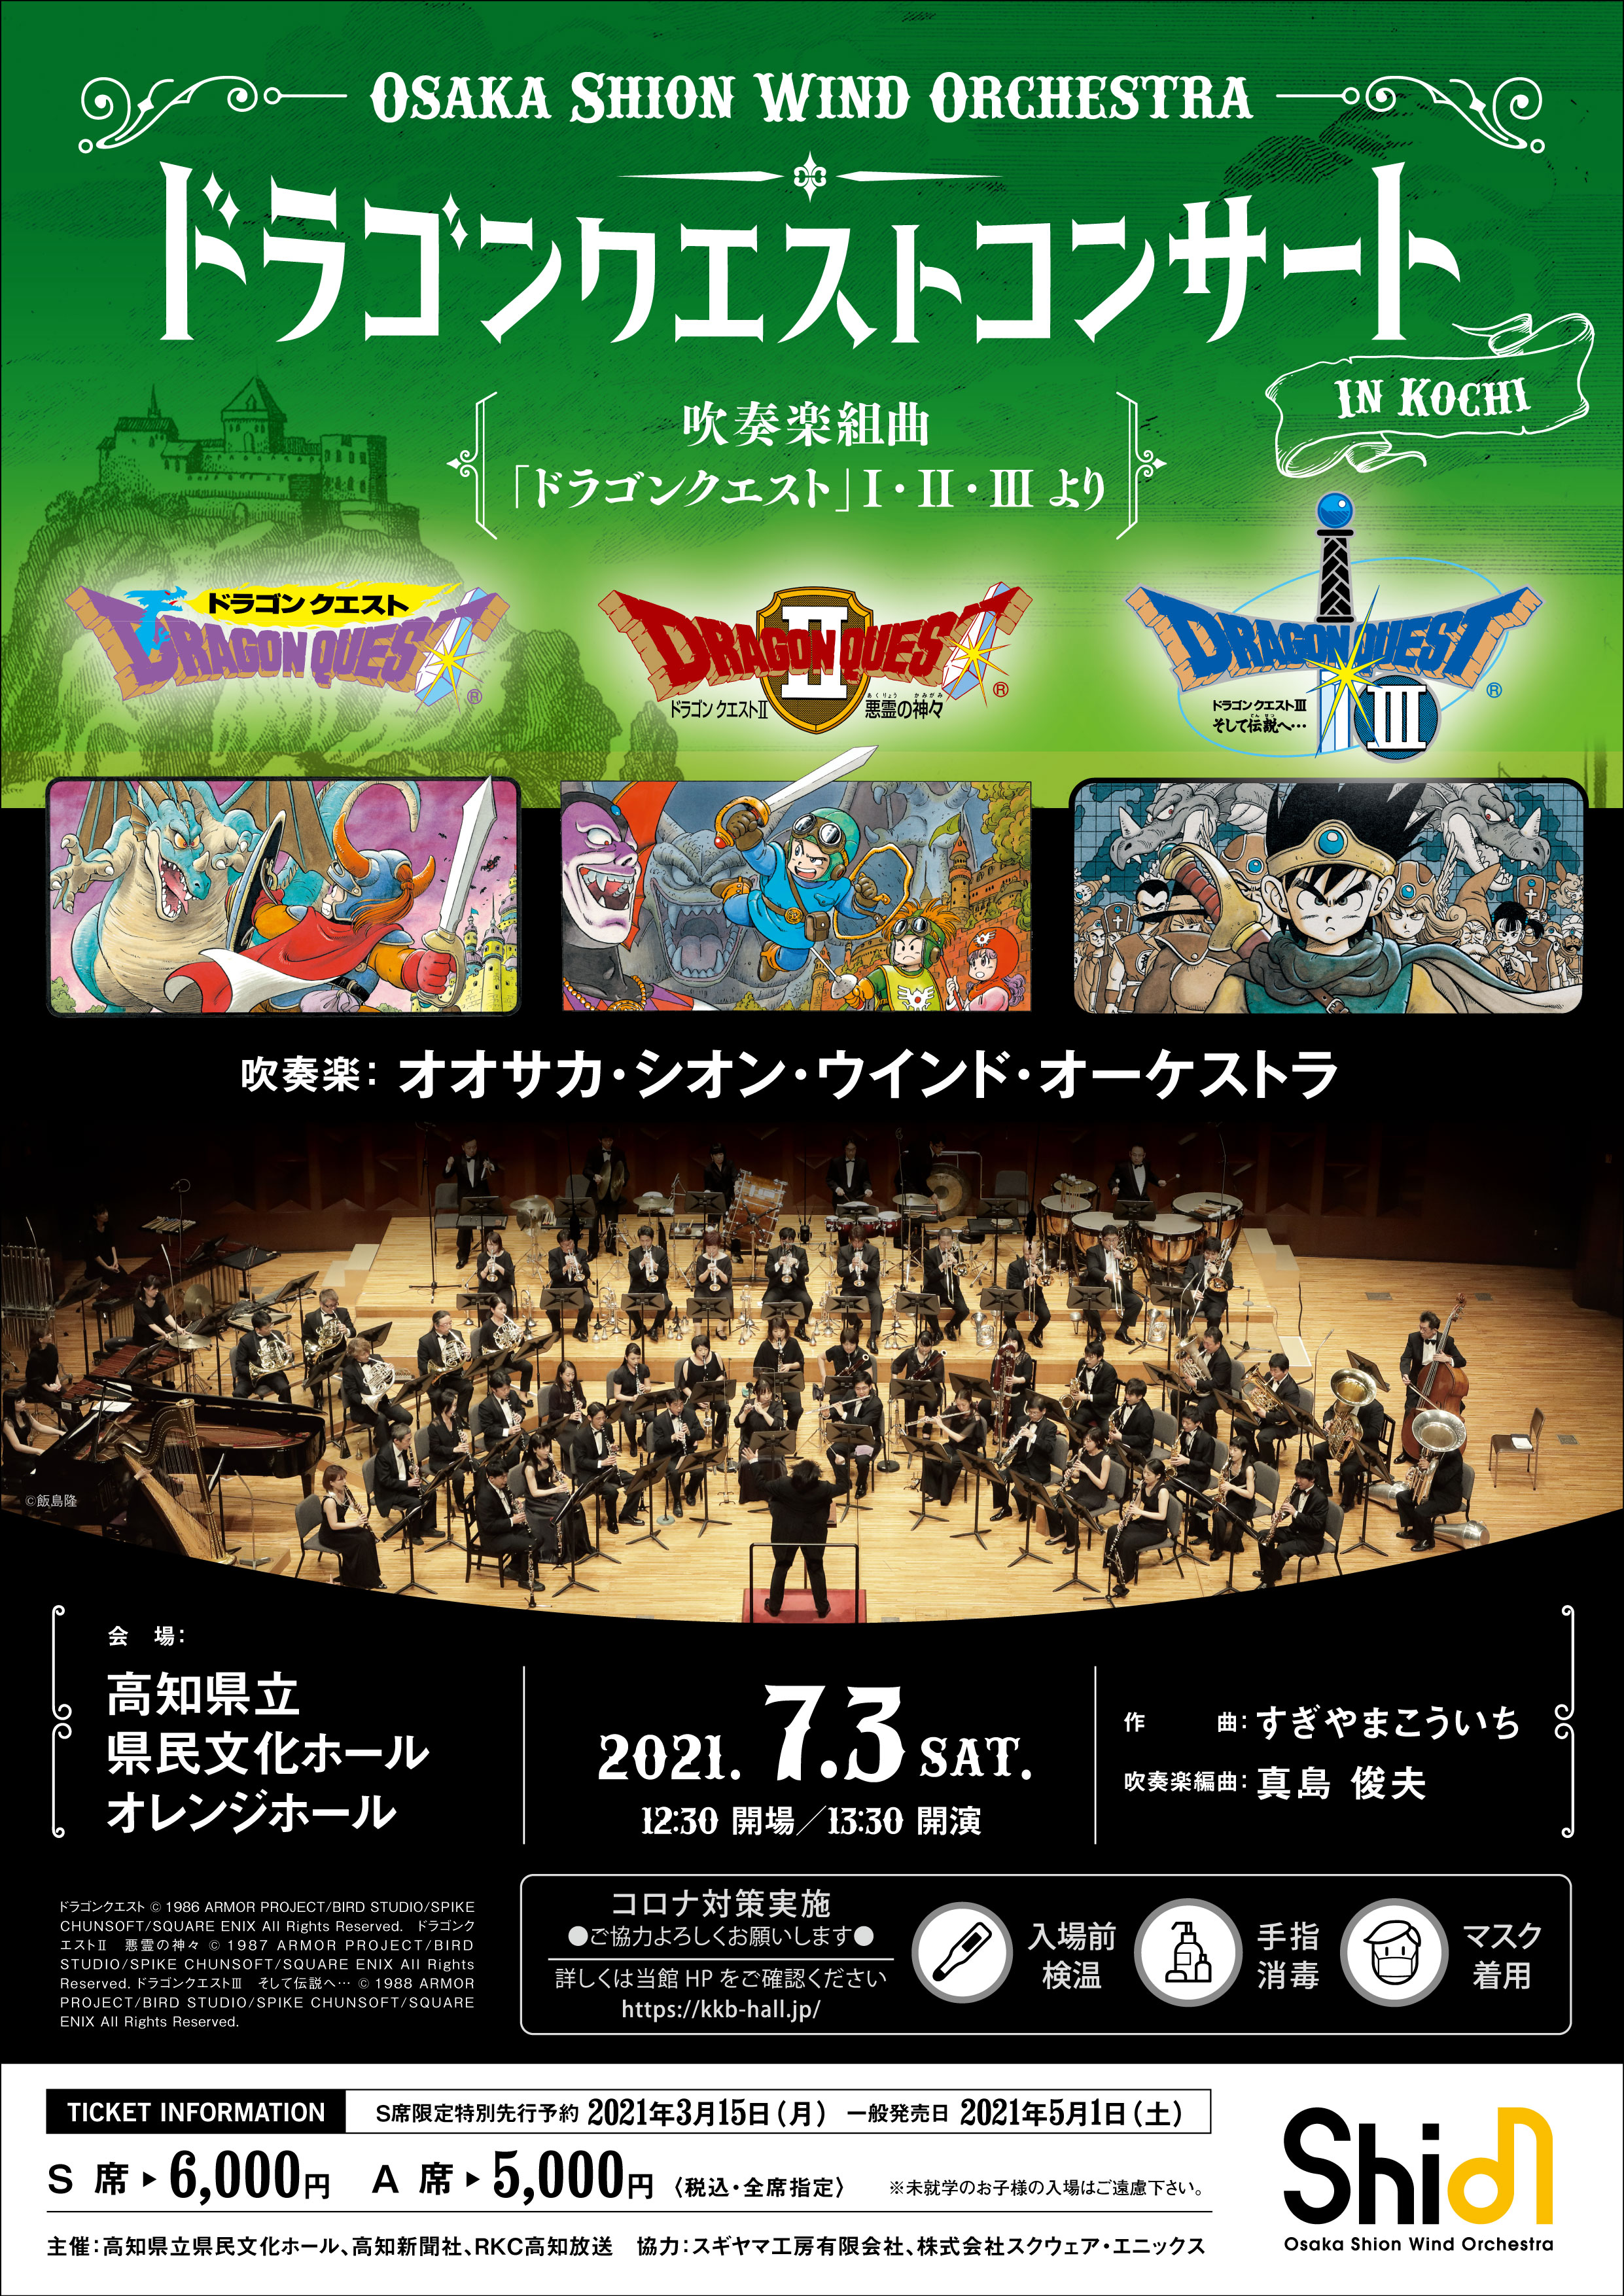 ドラゴンクエストコンサート In 高知 コンサート情報 Osaka Shion Wind Orchestra 大阪市音楽団